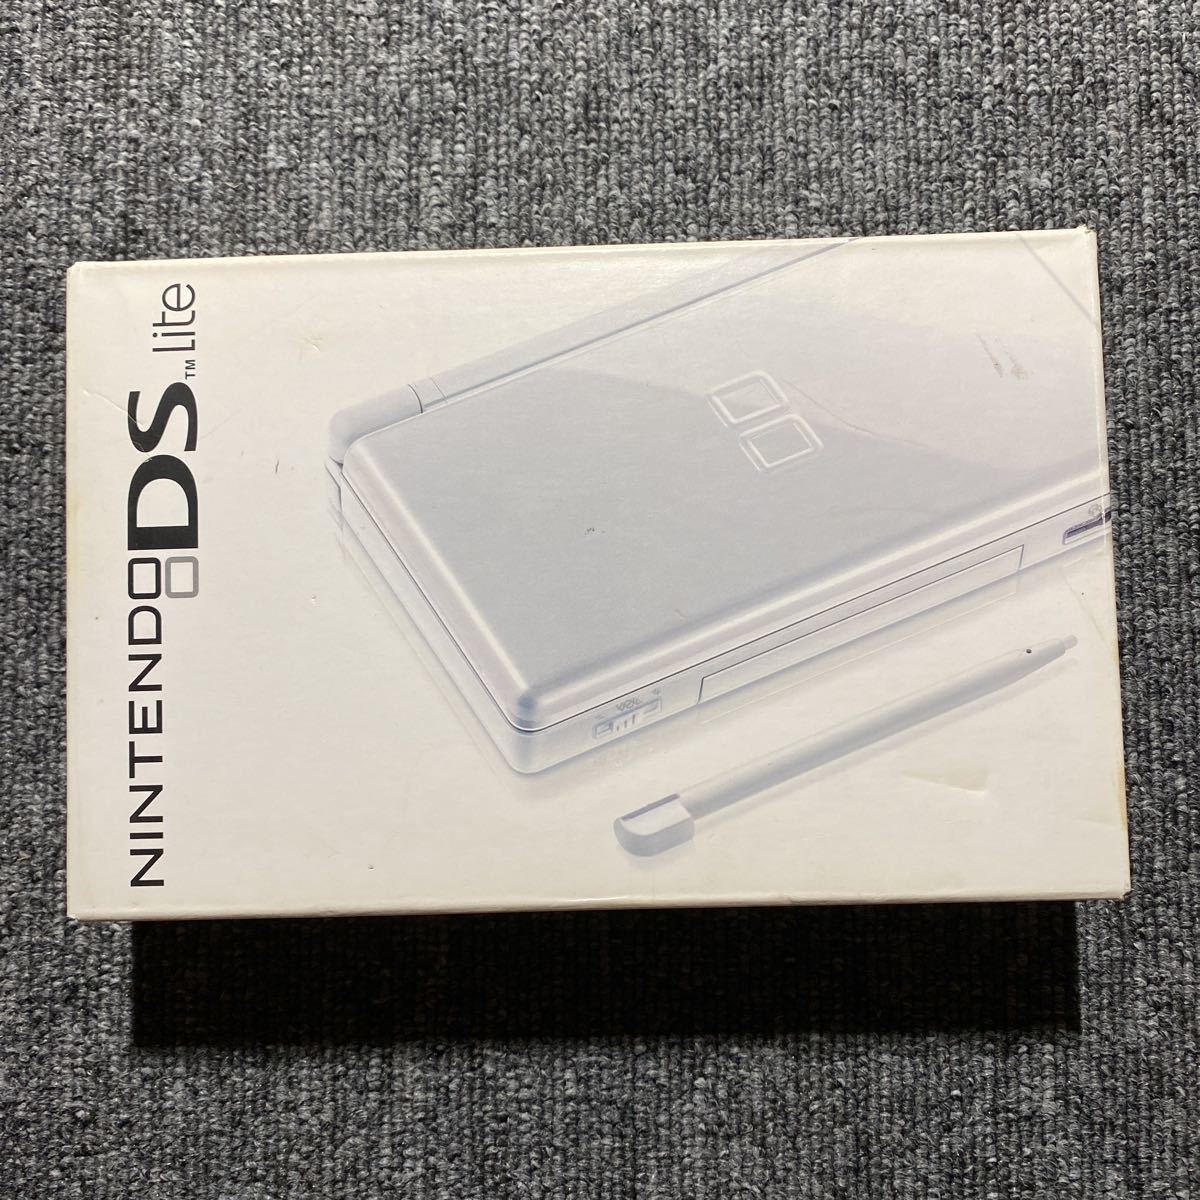 DS ニンテンドーDS Lite 北米版 ポーラホワイト